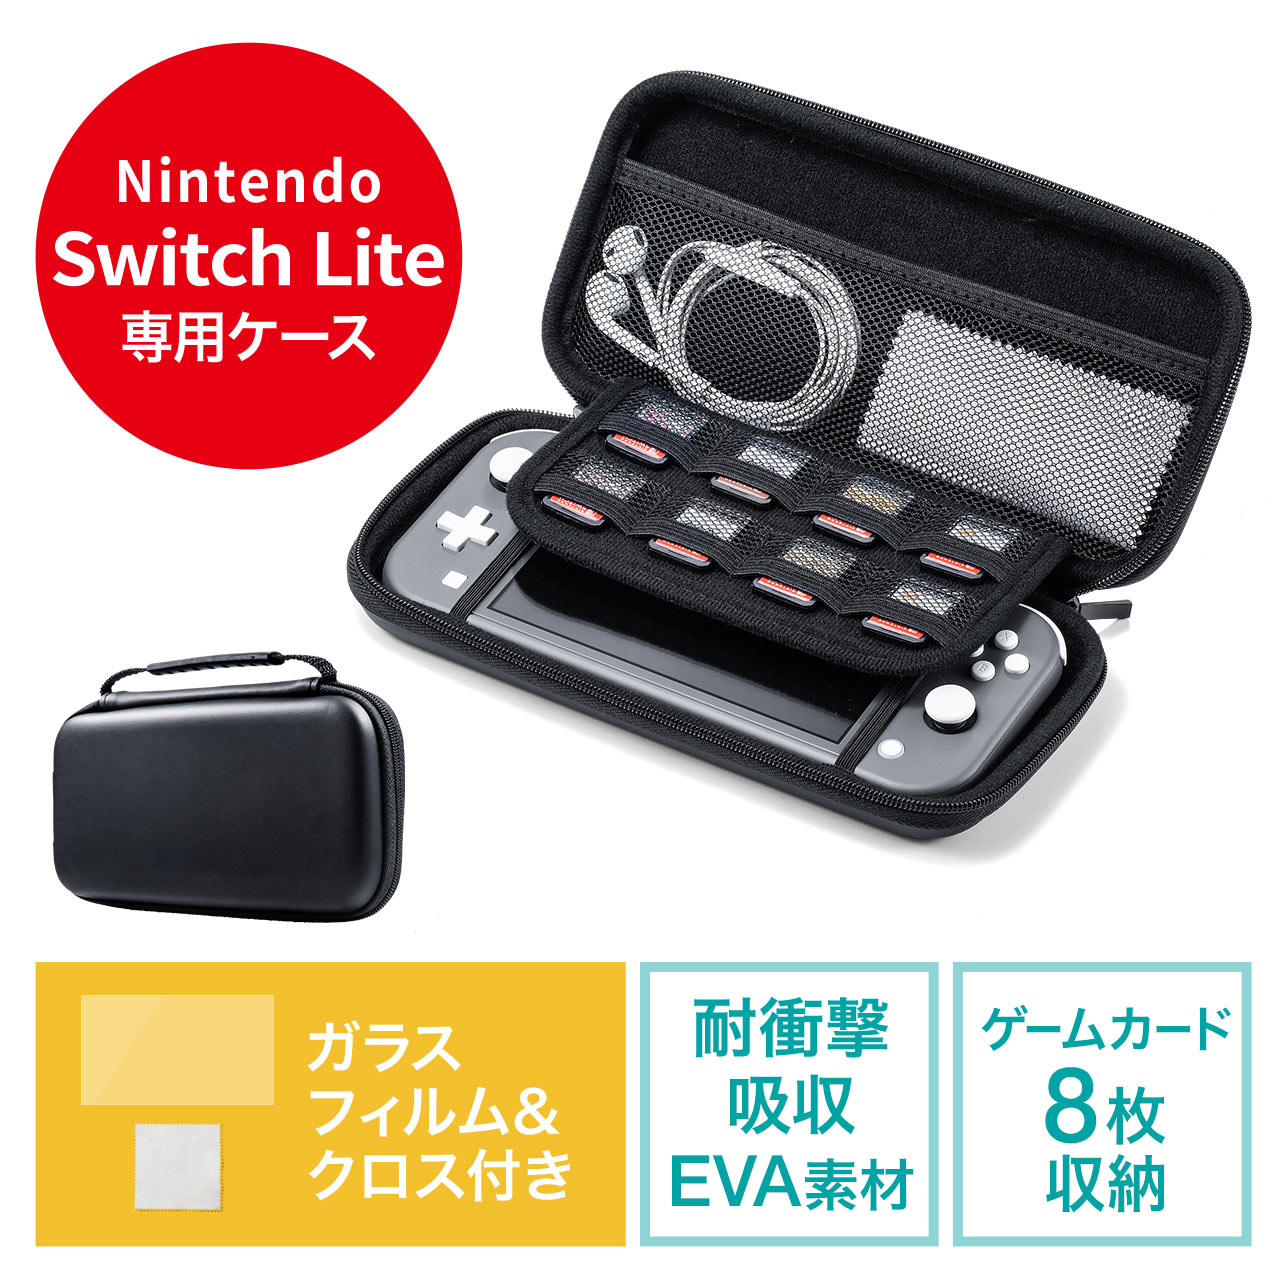 Nintendo Switch Litep Z~n[hP[X ʕیKXtB N[jONX 3_Zbg 200-NSW008BK